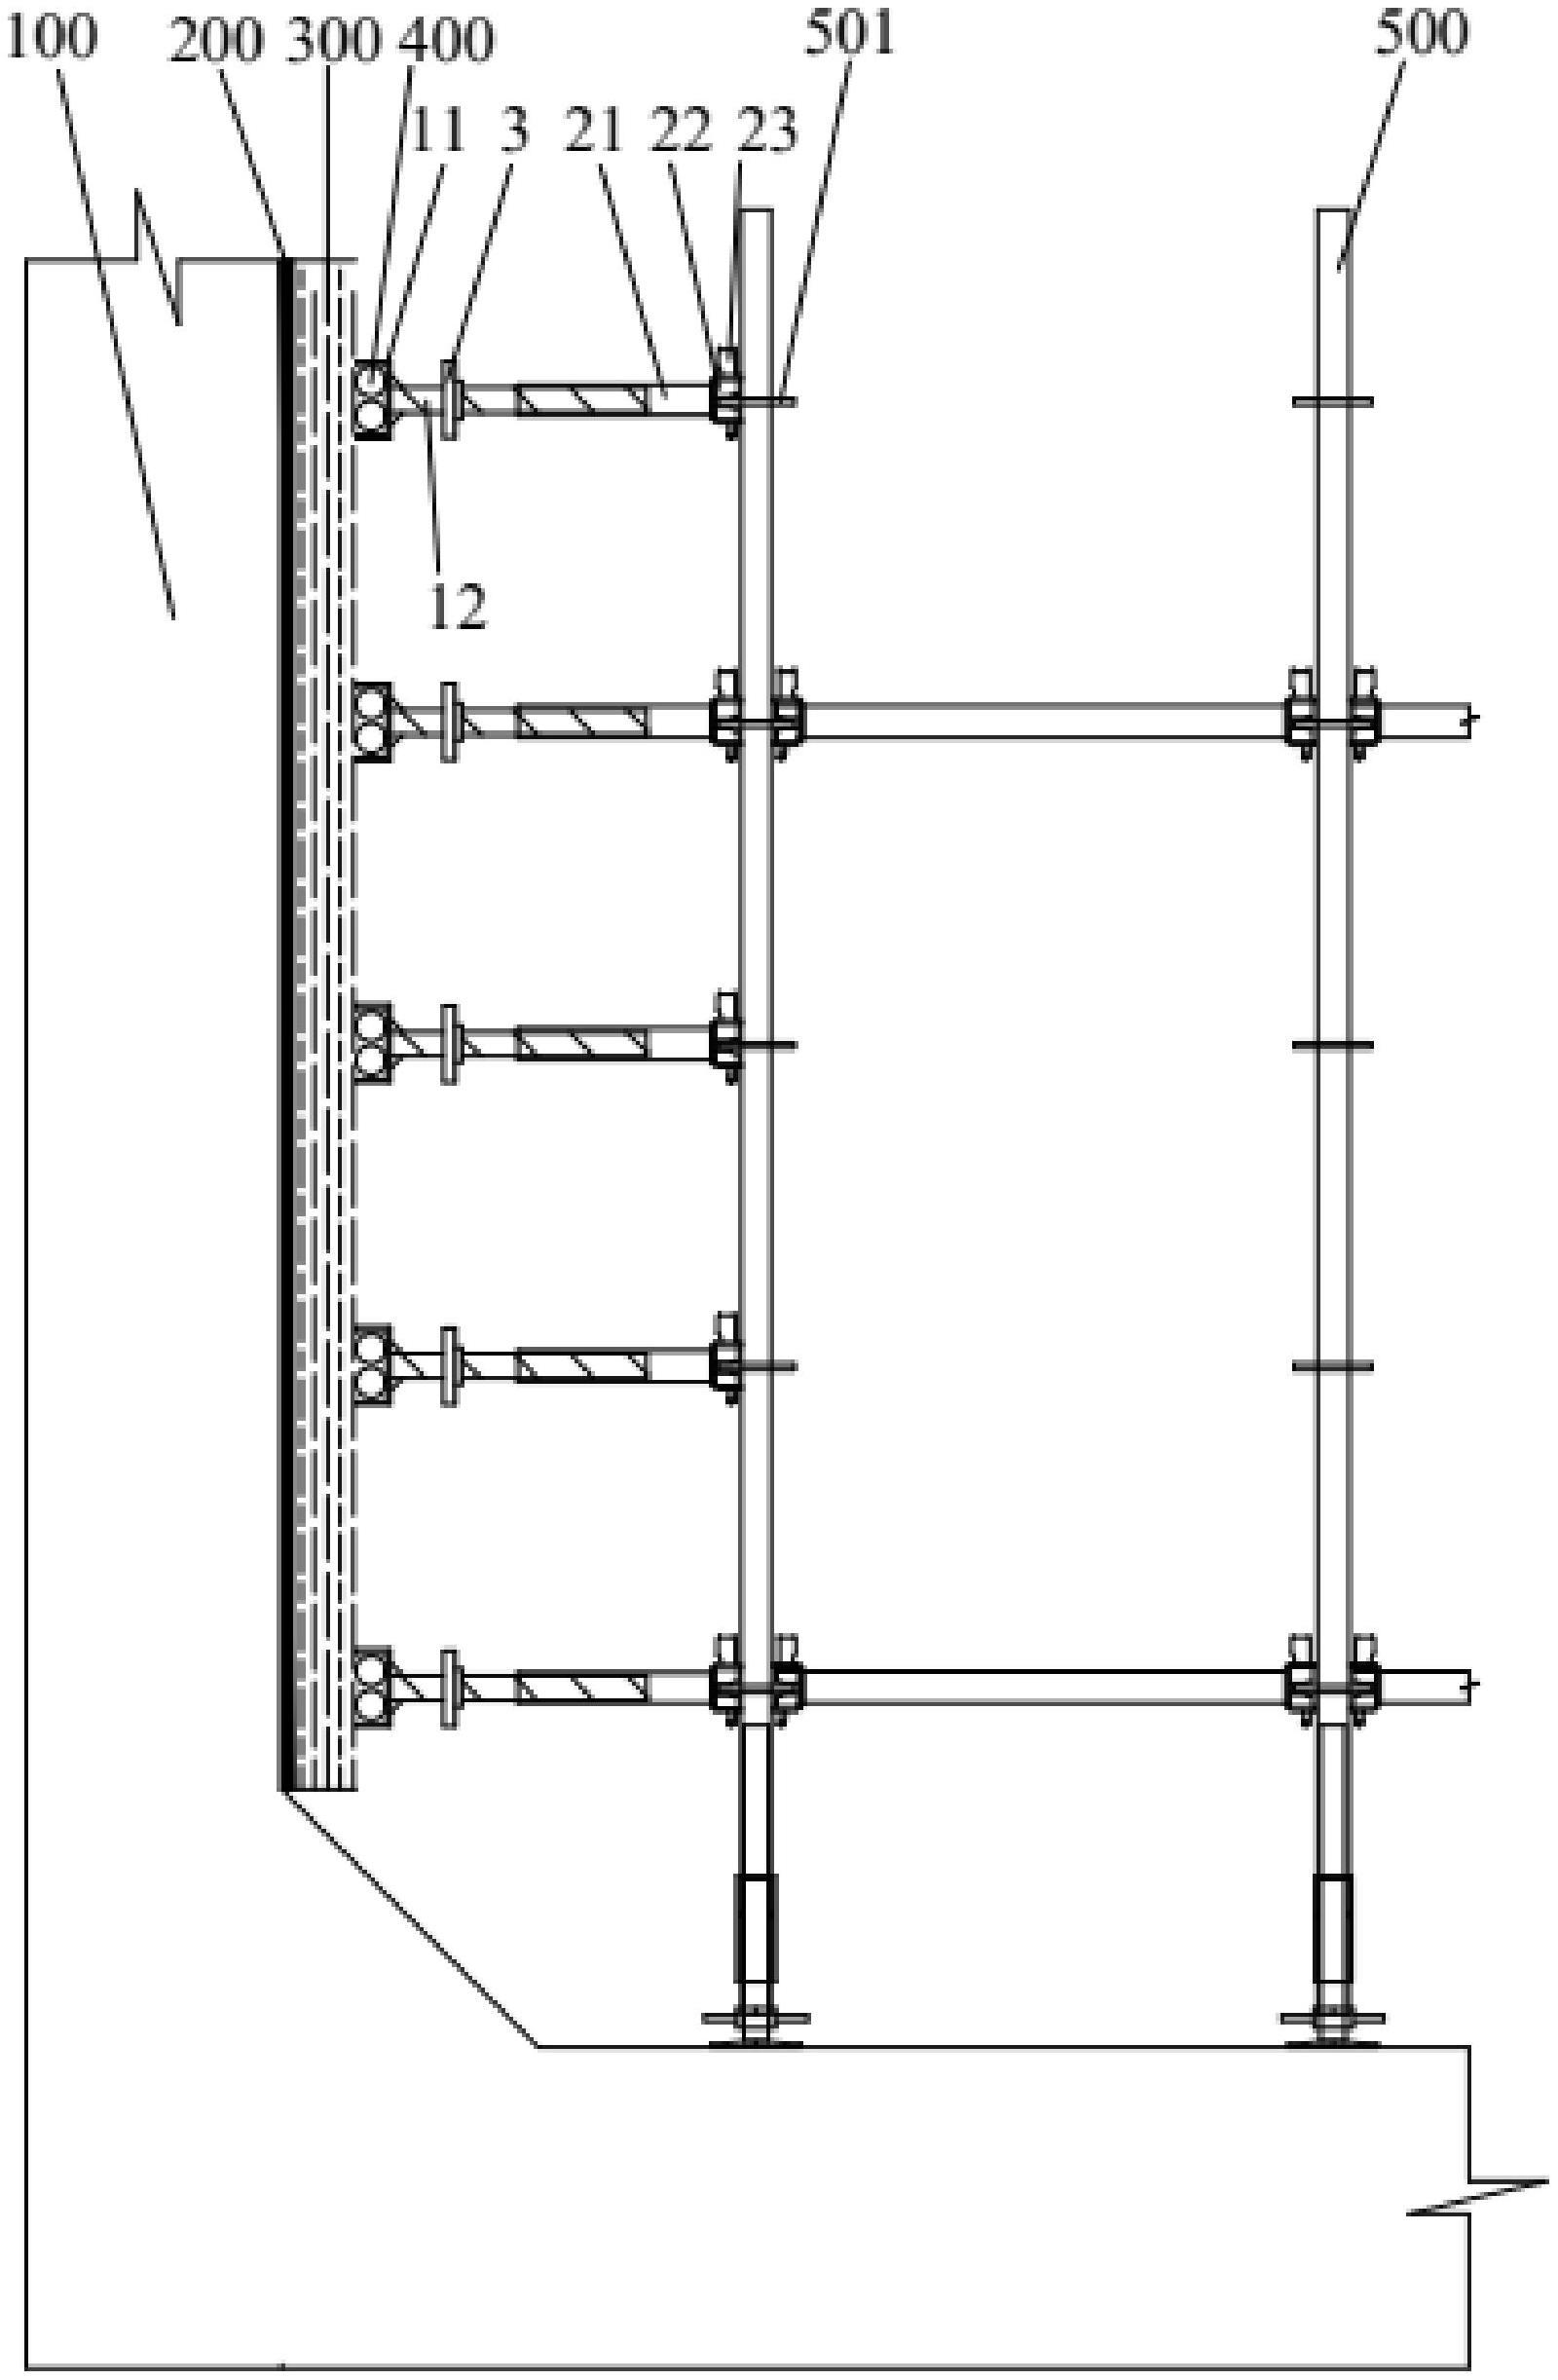 内衬墙模板支撑装置的制作方法